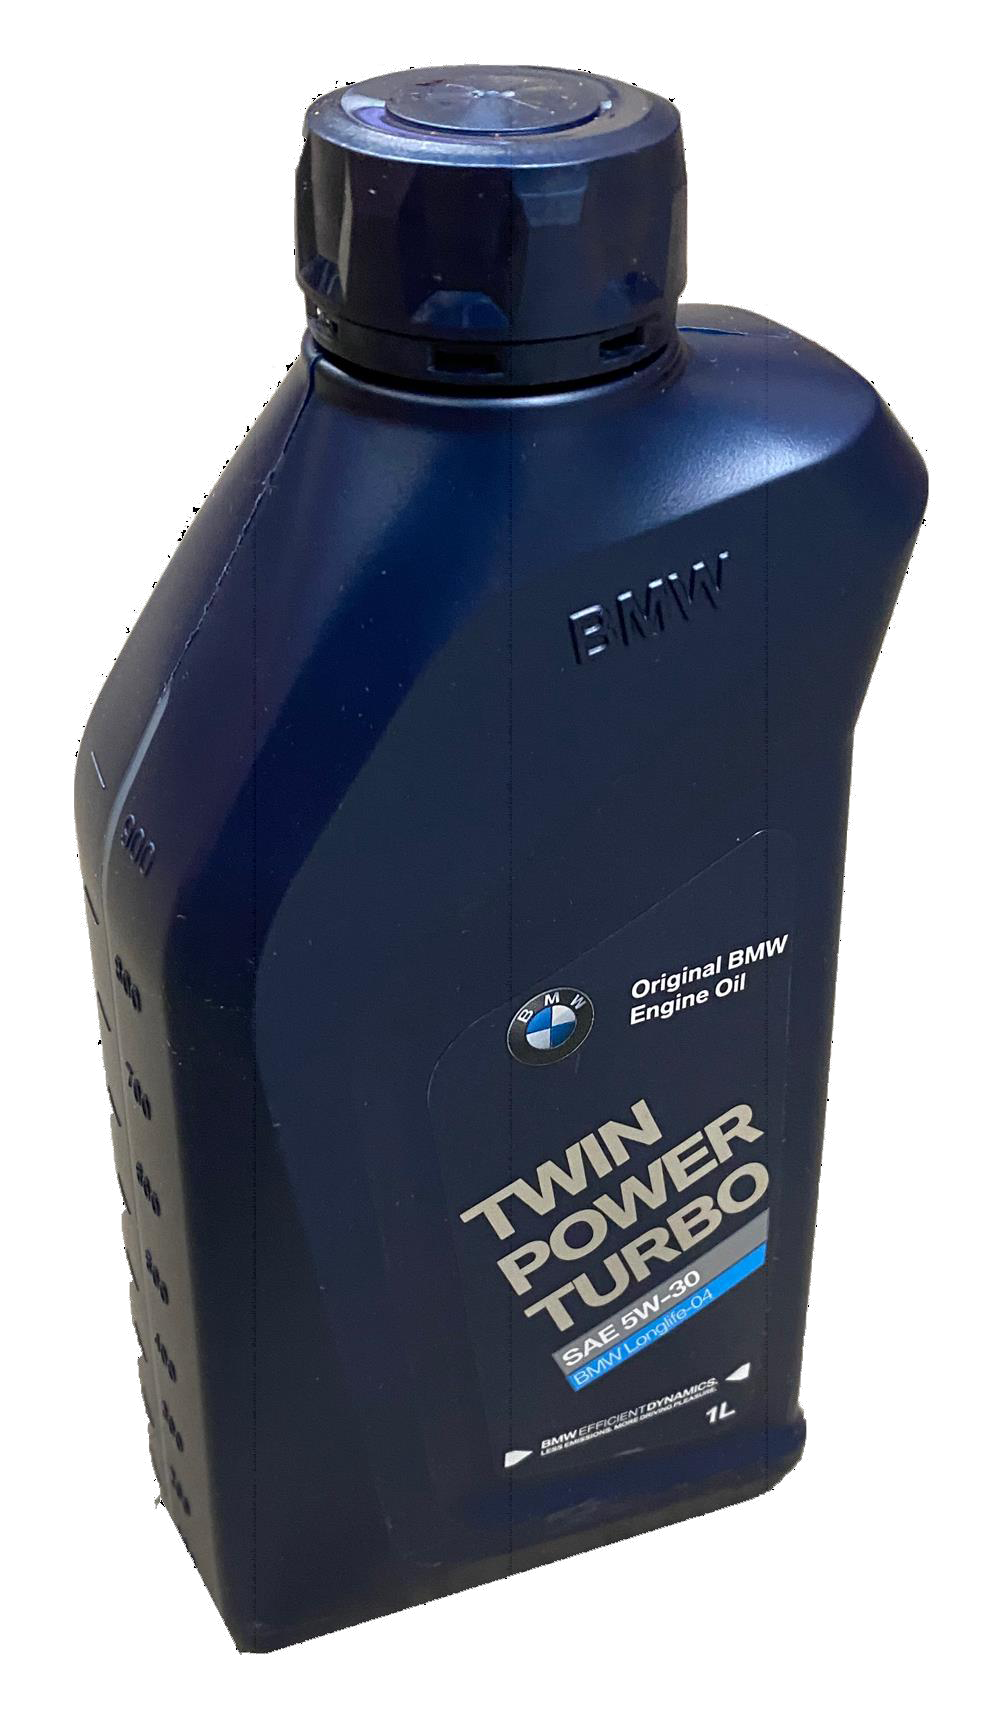 BMW TwinPower Turbo 5W-30 Motoröl, 1l